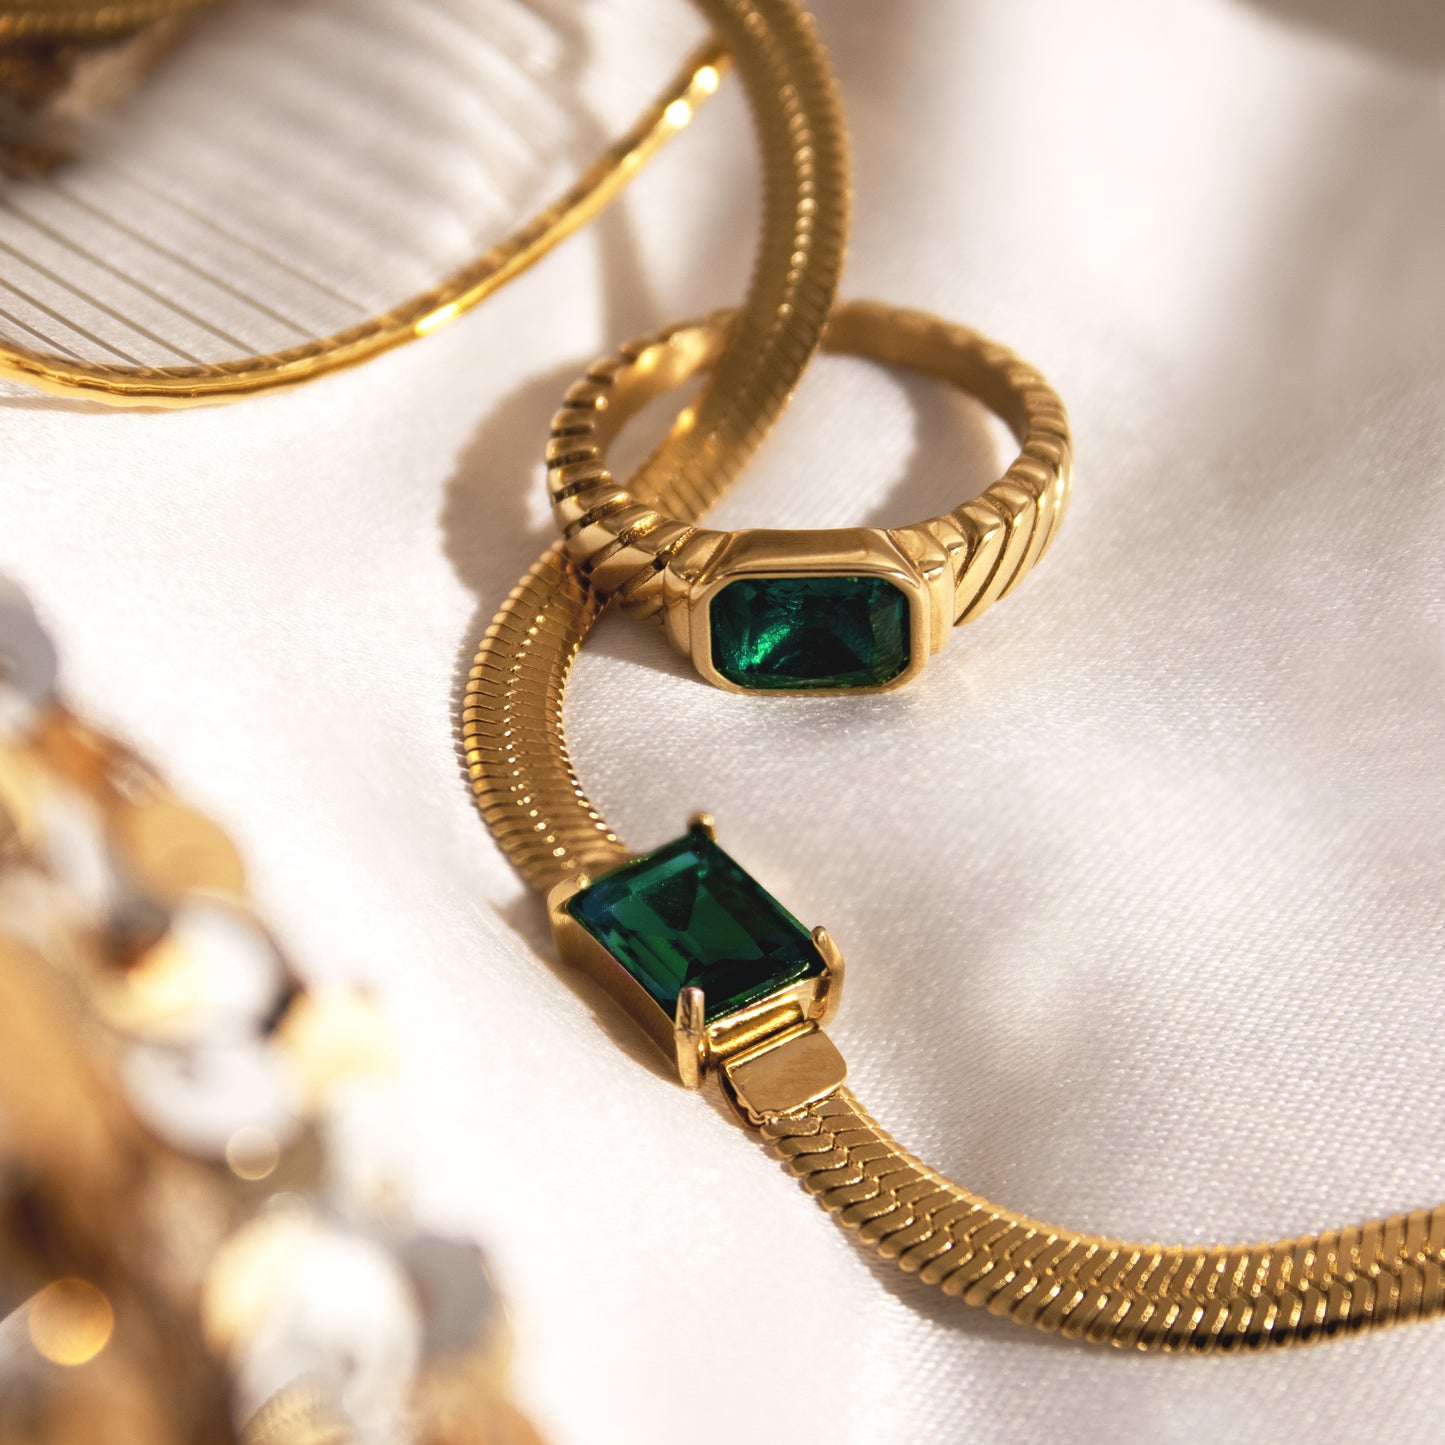 Brilliant Emerald Ring Rose Gold